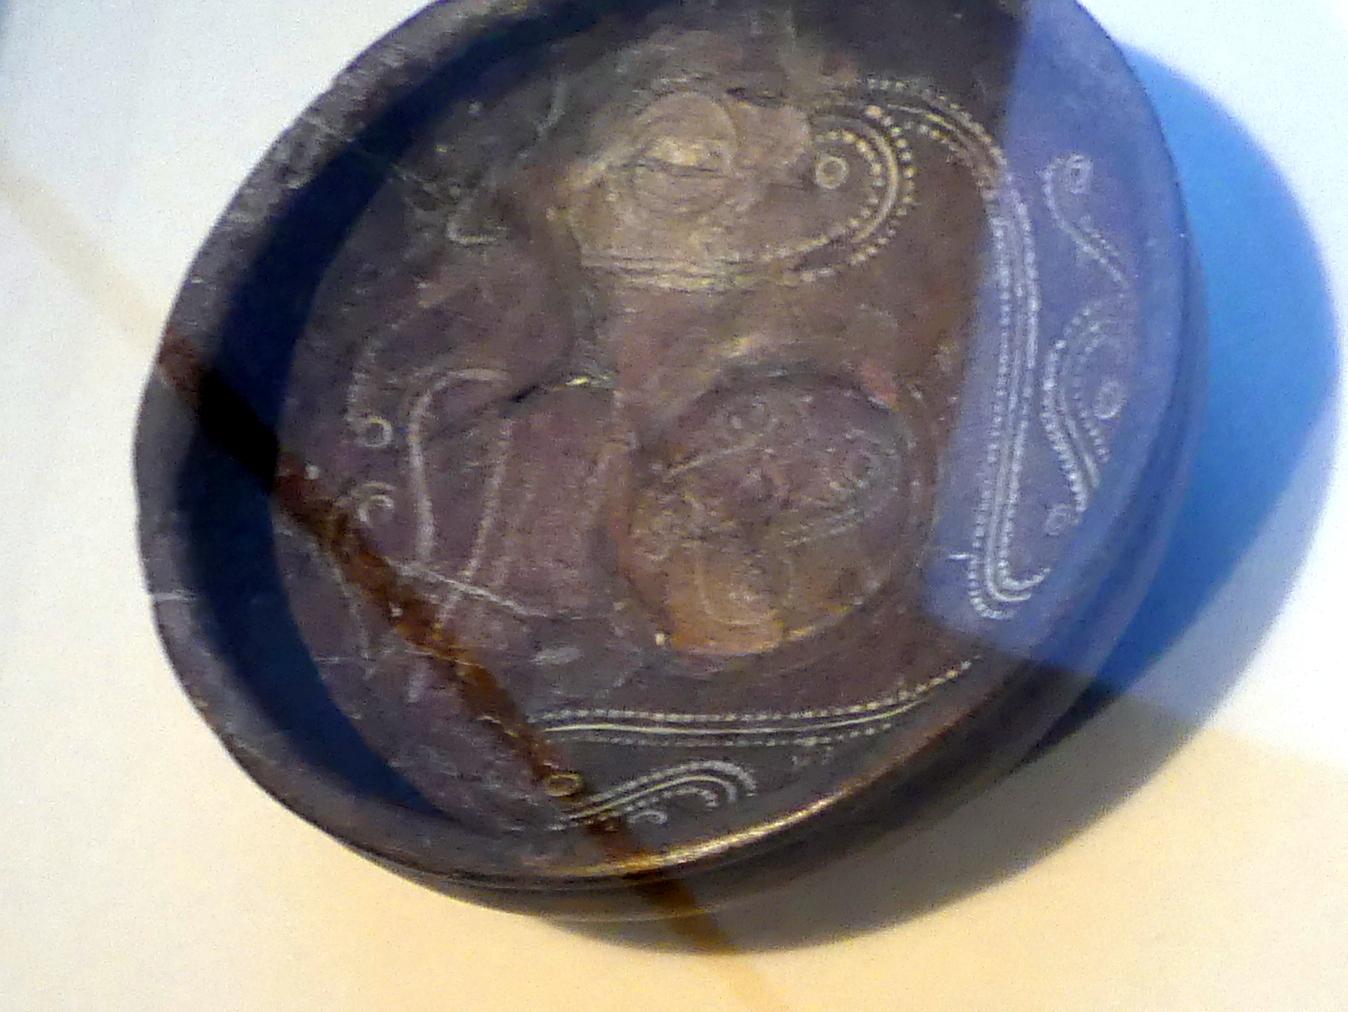 Braubacher Schale, verziert mit Rollrädchendekor, Latènezeit, 700 - 1 v. Chr., Bild 1/2